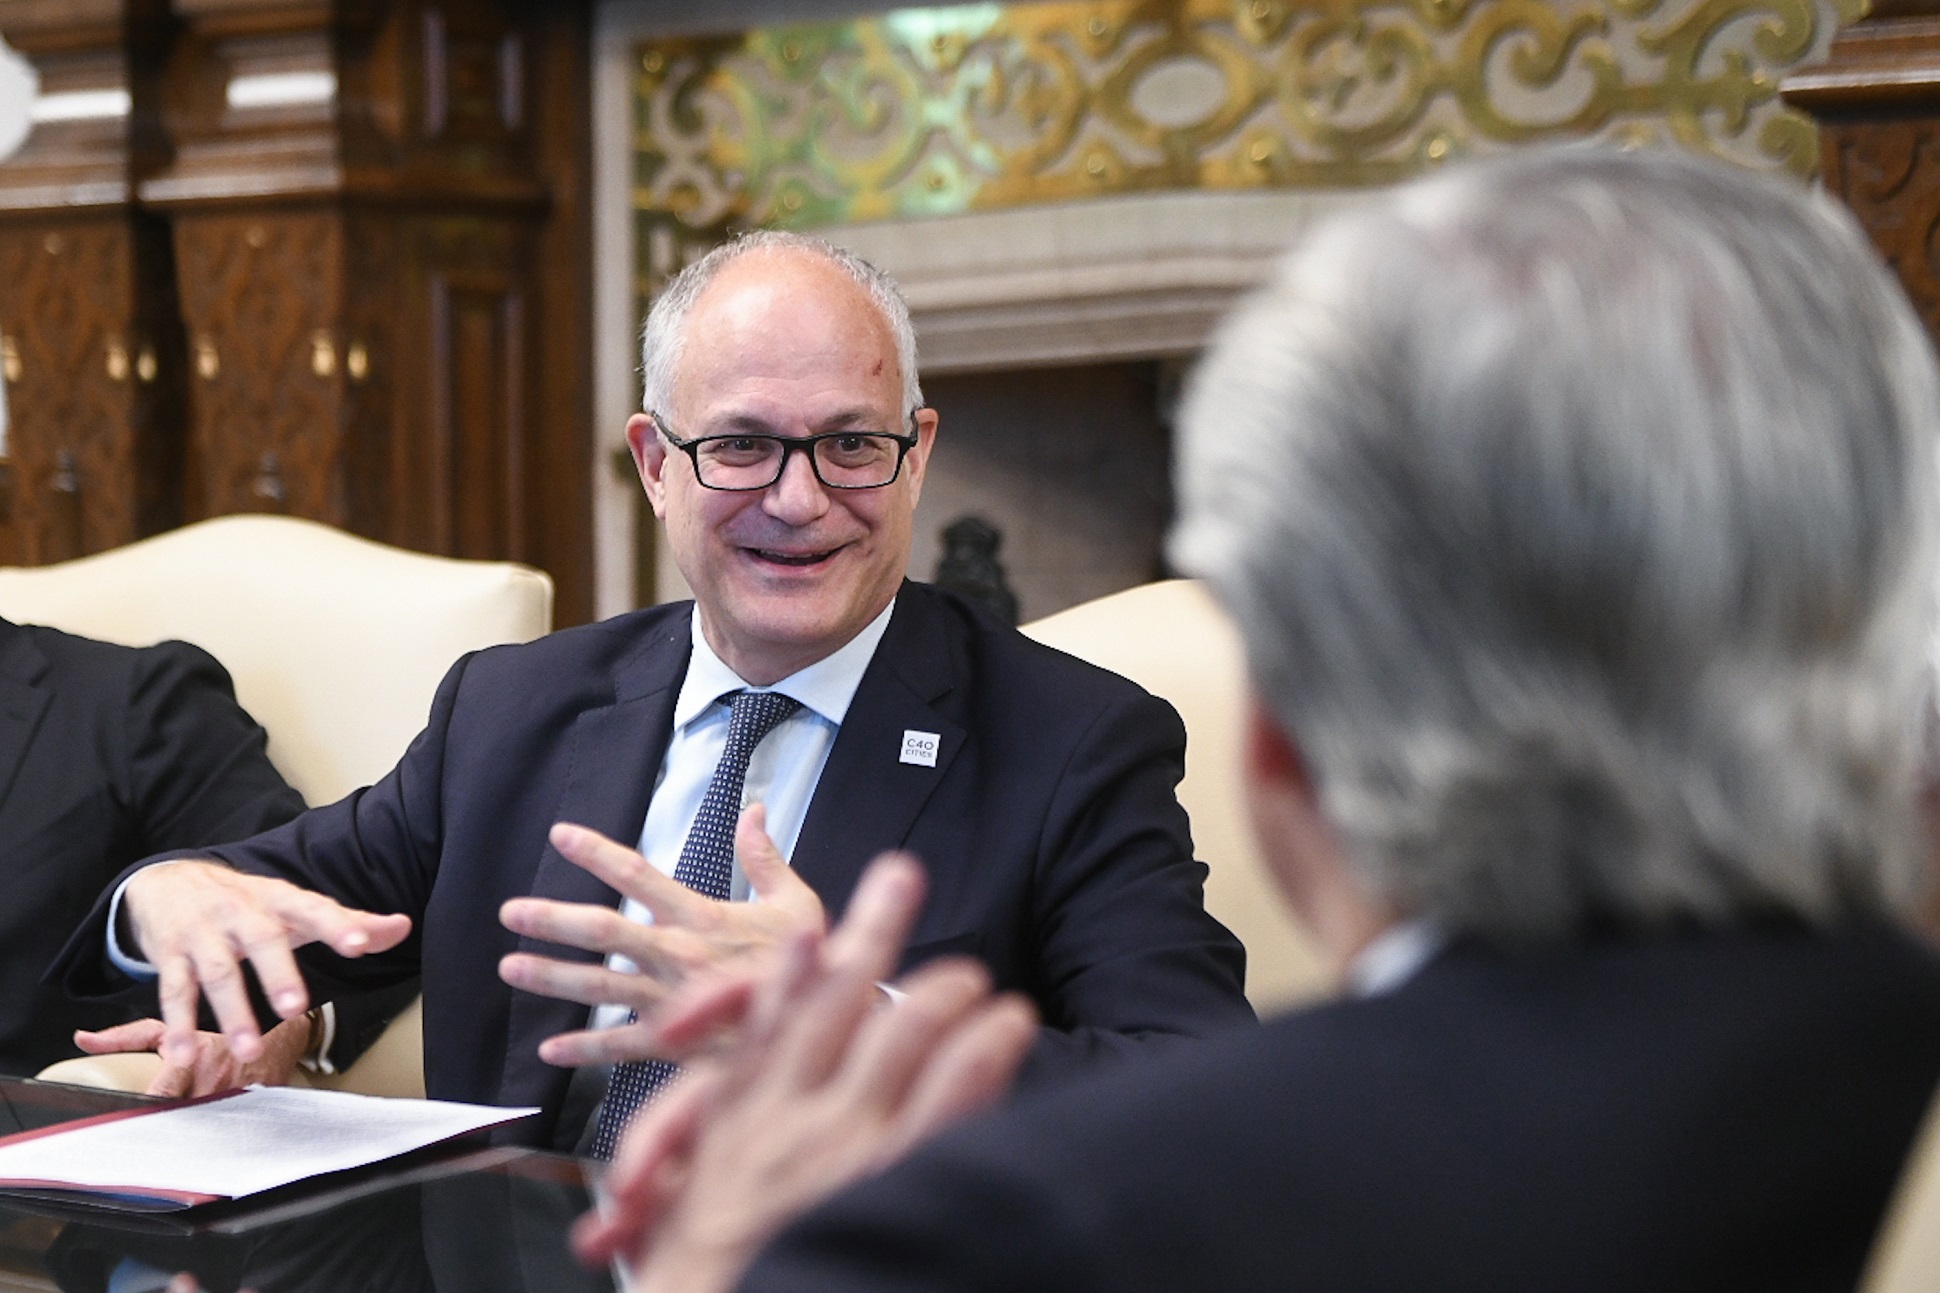 El presidente se reunió con el alcalde de la ciudad de Roma, Roberto Gualtieri